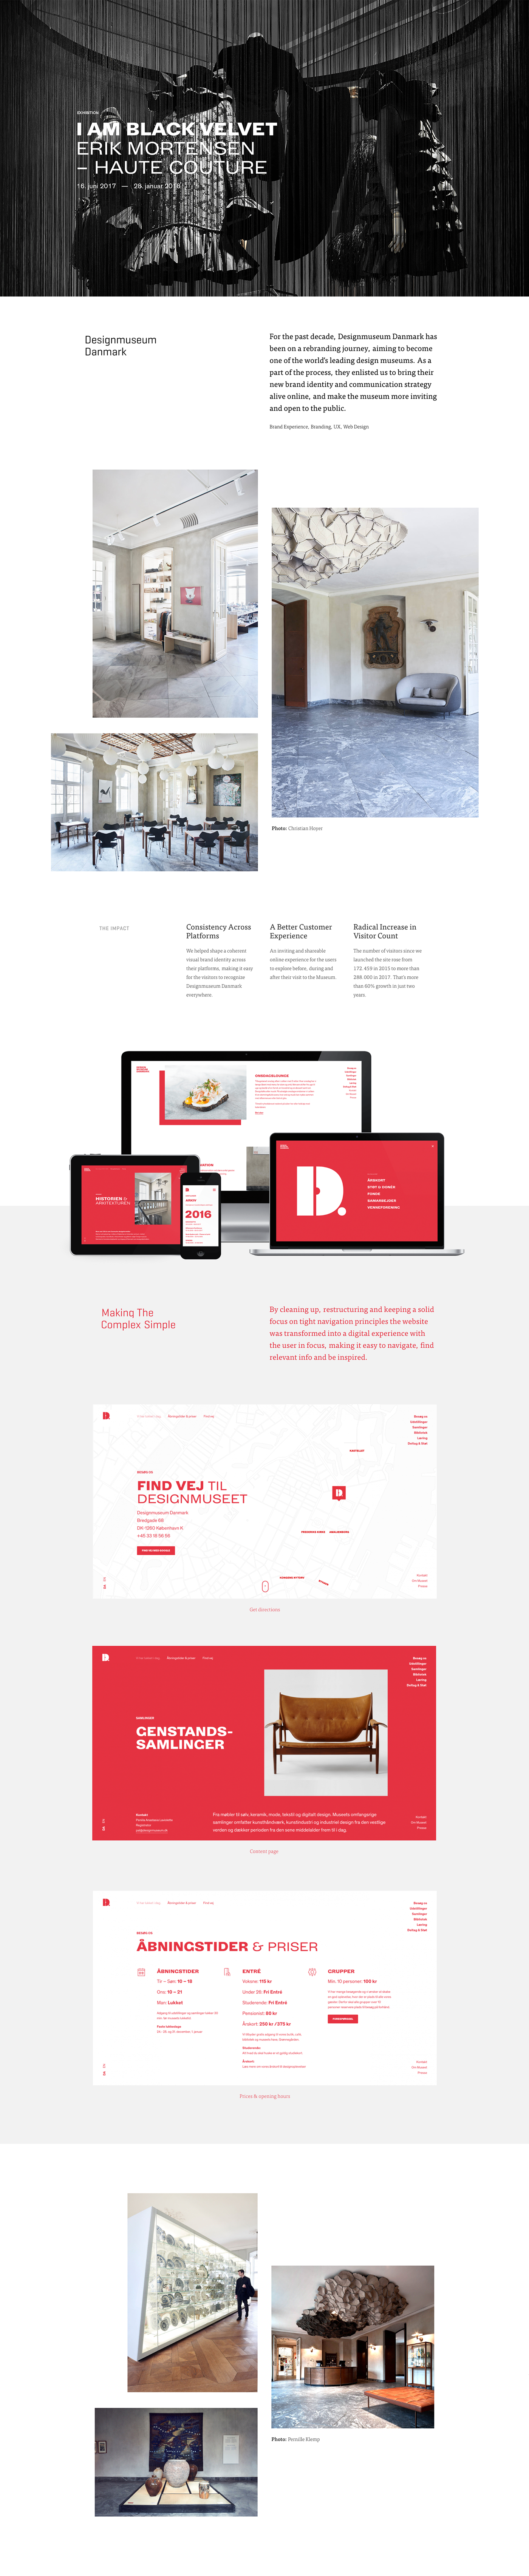 Web museum design denmark danmark Webdesign danishdesign